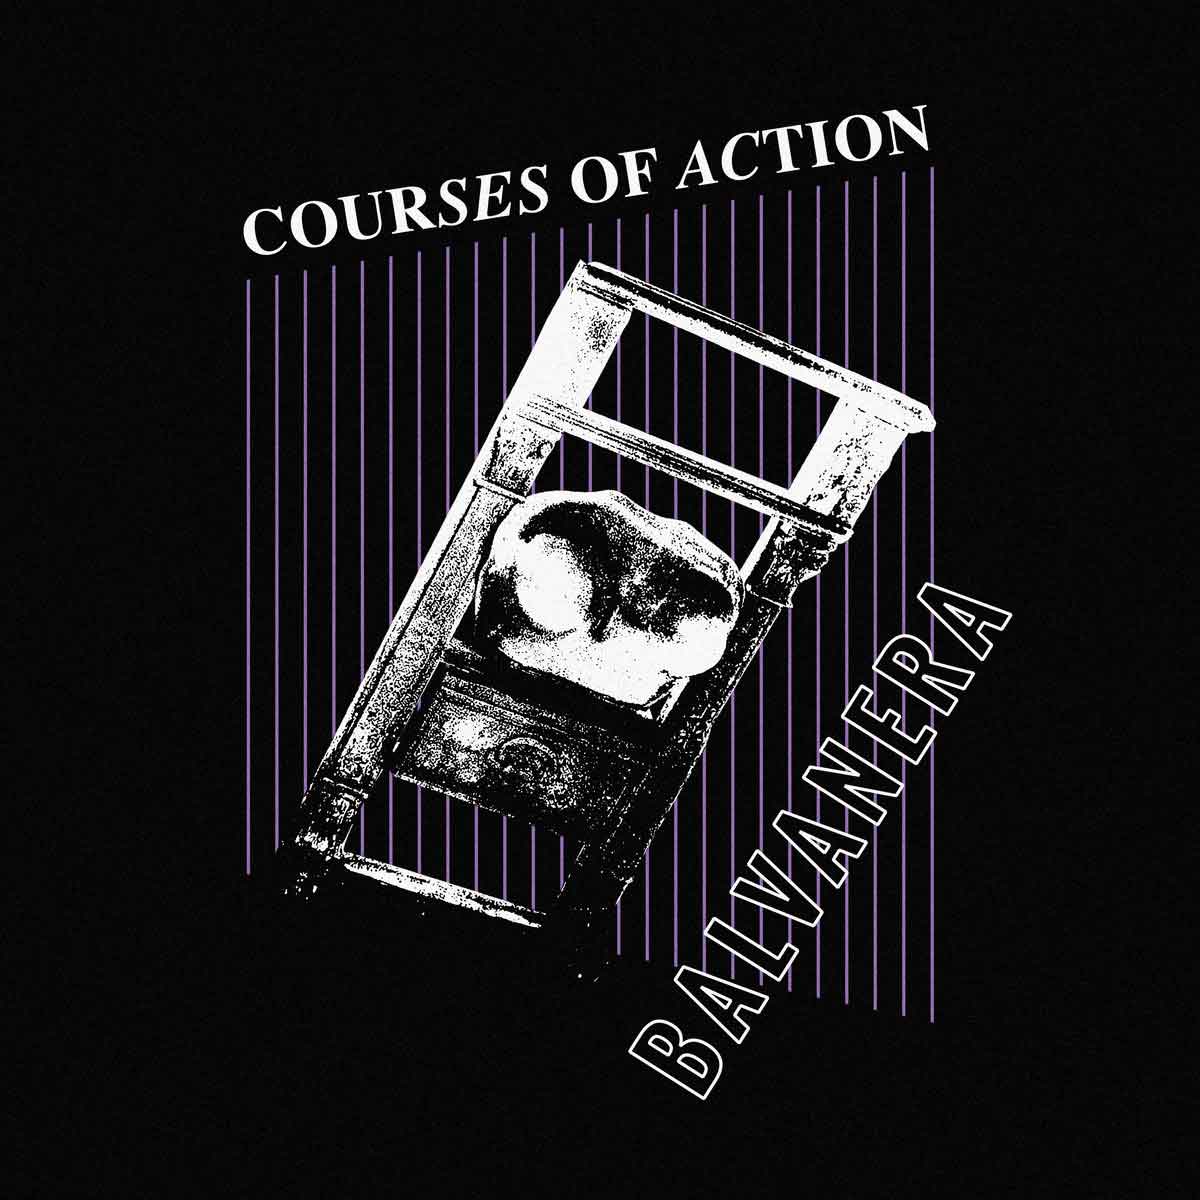 Tapa de Courses of Action, disco de Balvanera